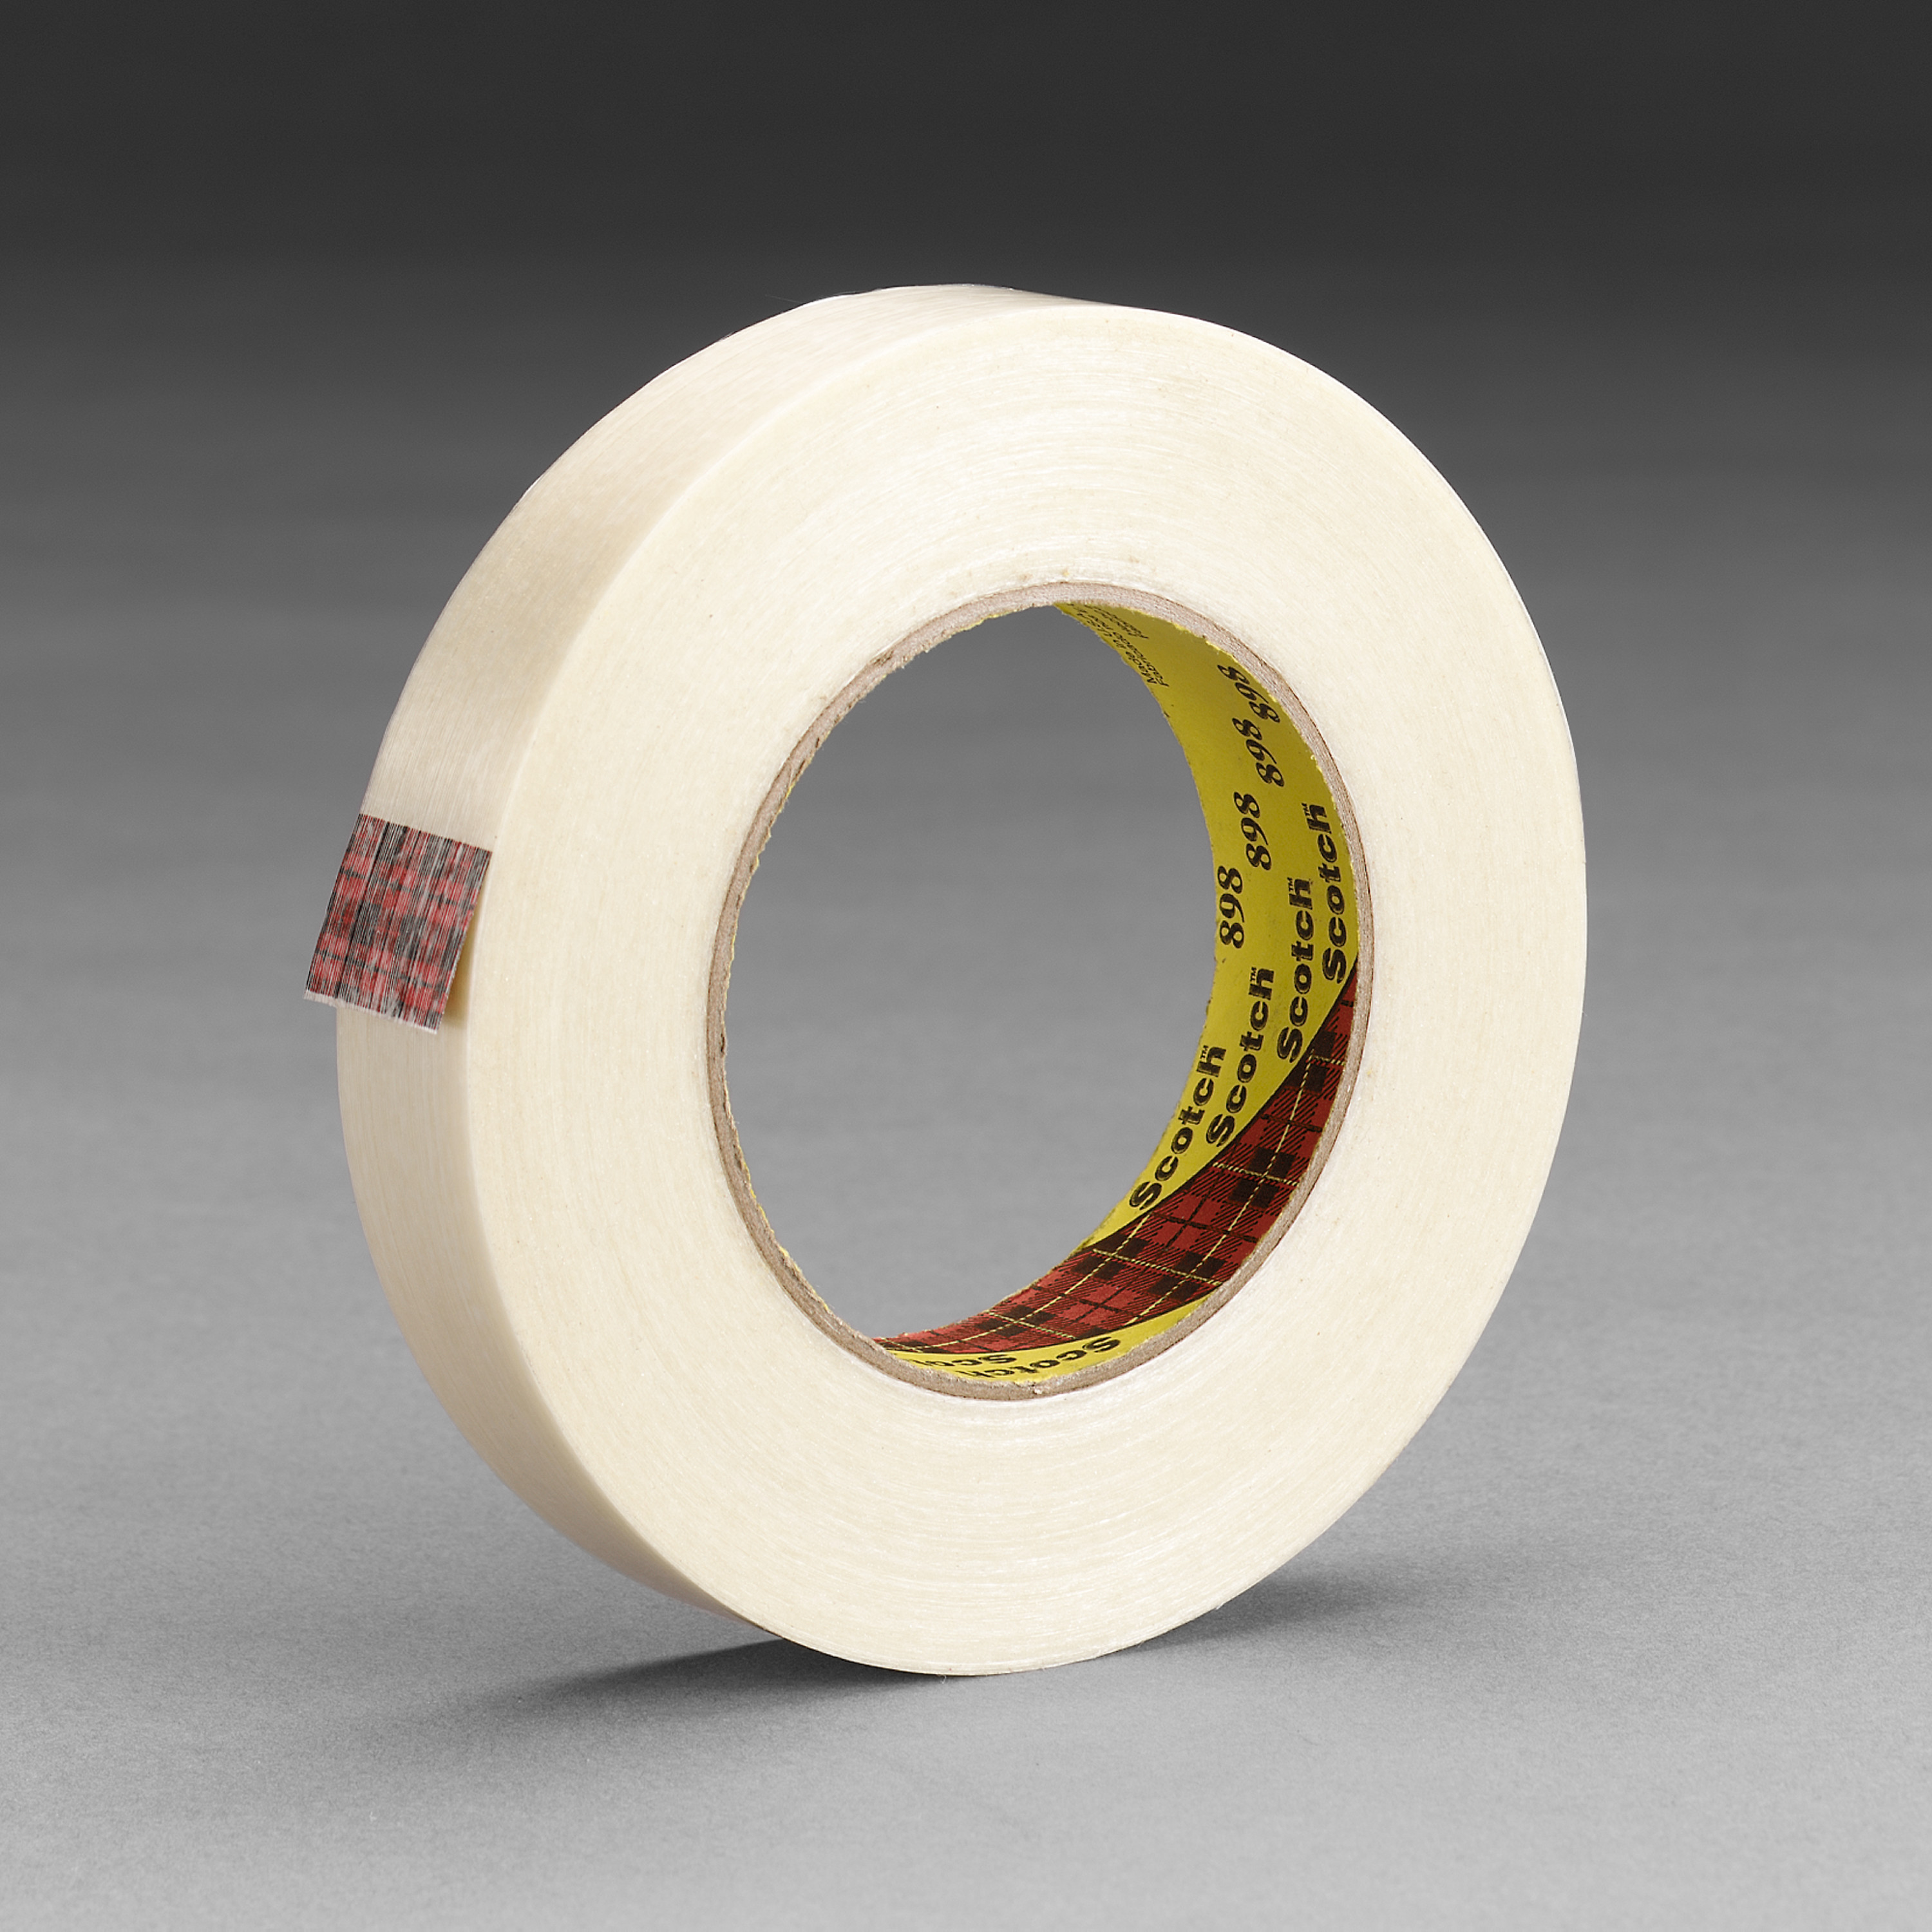 Scotch® Filament Tape 898, Clear, 48 mm x 55 m, 6.6 mil, 24 rolls per
case, Plastic Core